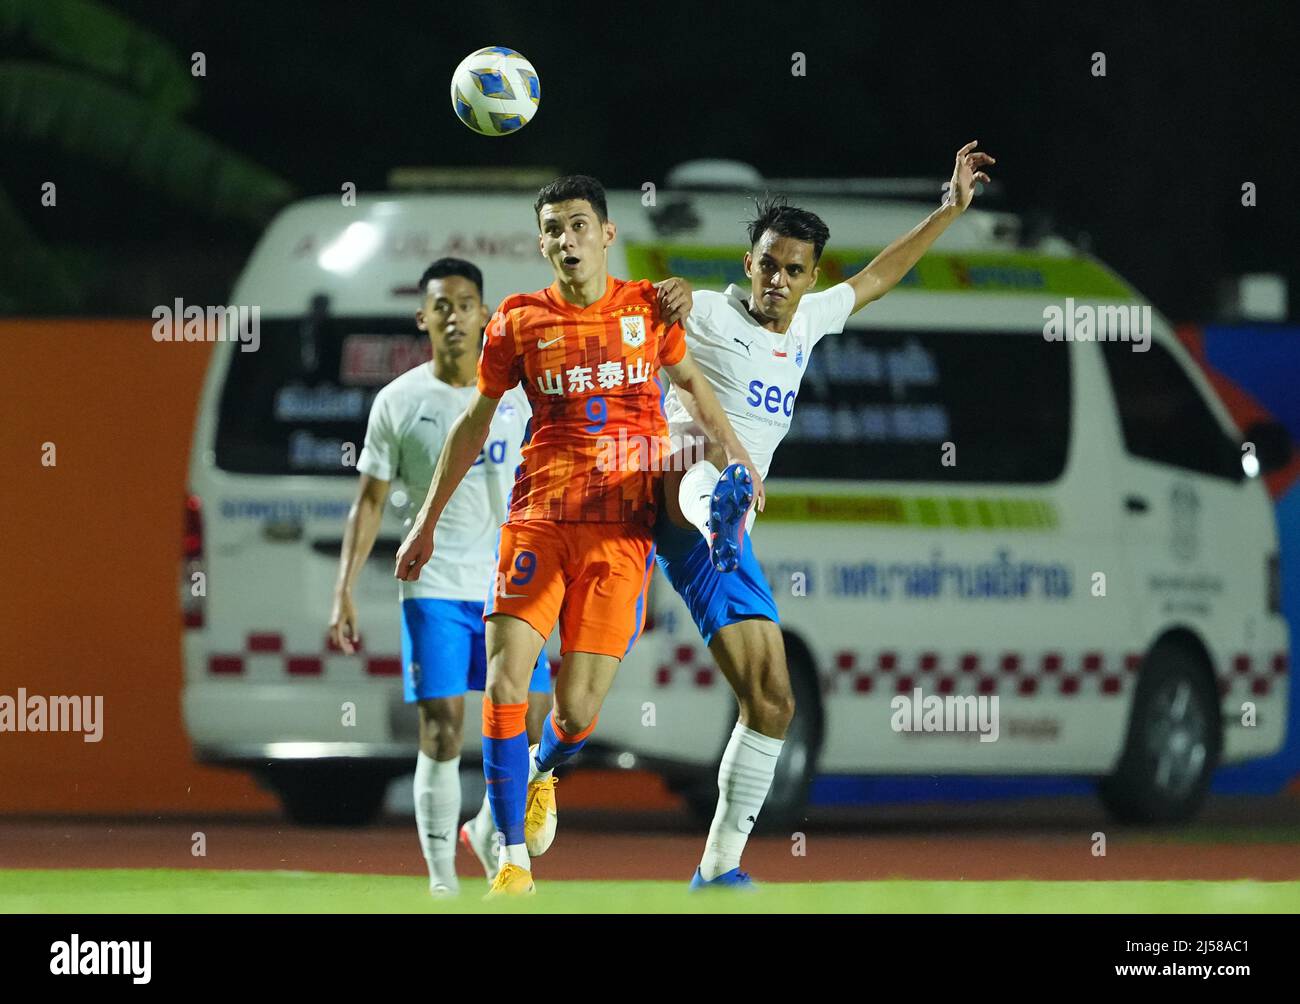 Fútbol - Liga de Campeones AFC - Grupo F - Shandong Taishan v Lion City  Sailors - Estadio Buriram City, Buriram, Tailandia - 21 de abril de 2022  Shandong Taishan's Baihelamu Abuduwaili